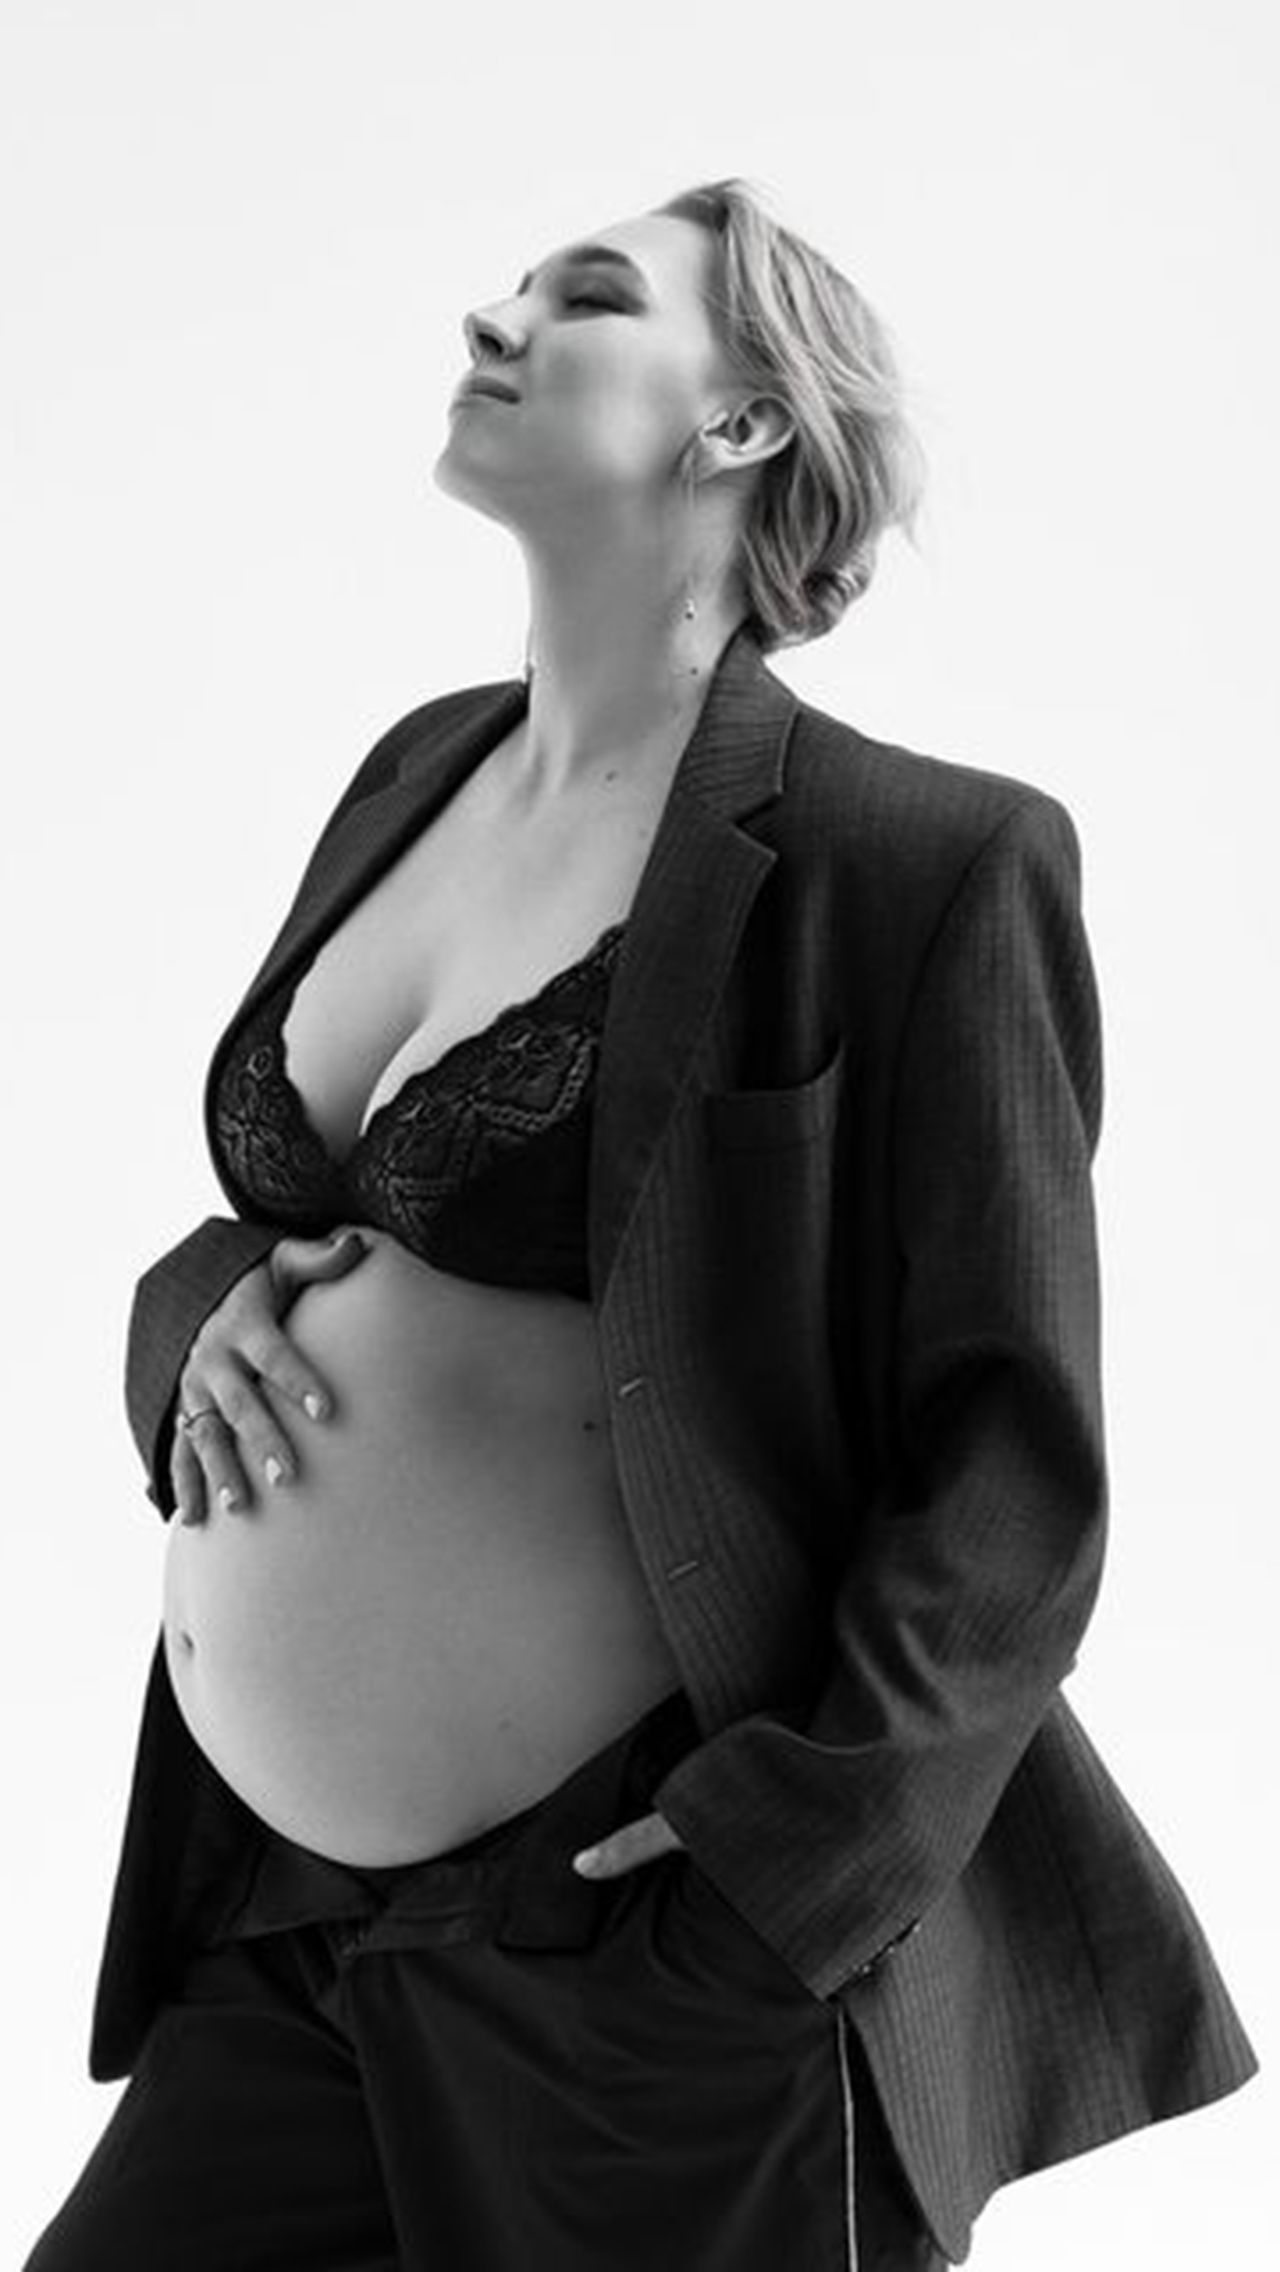 Нет никаких сомнений, что Веснина очень рада. Ещё в марте она трогательно объявила о второй беременности. «Счастье, которое греет изнутри. Скоро стану мамой двоих», — говорила Елена, и вот это случилось.